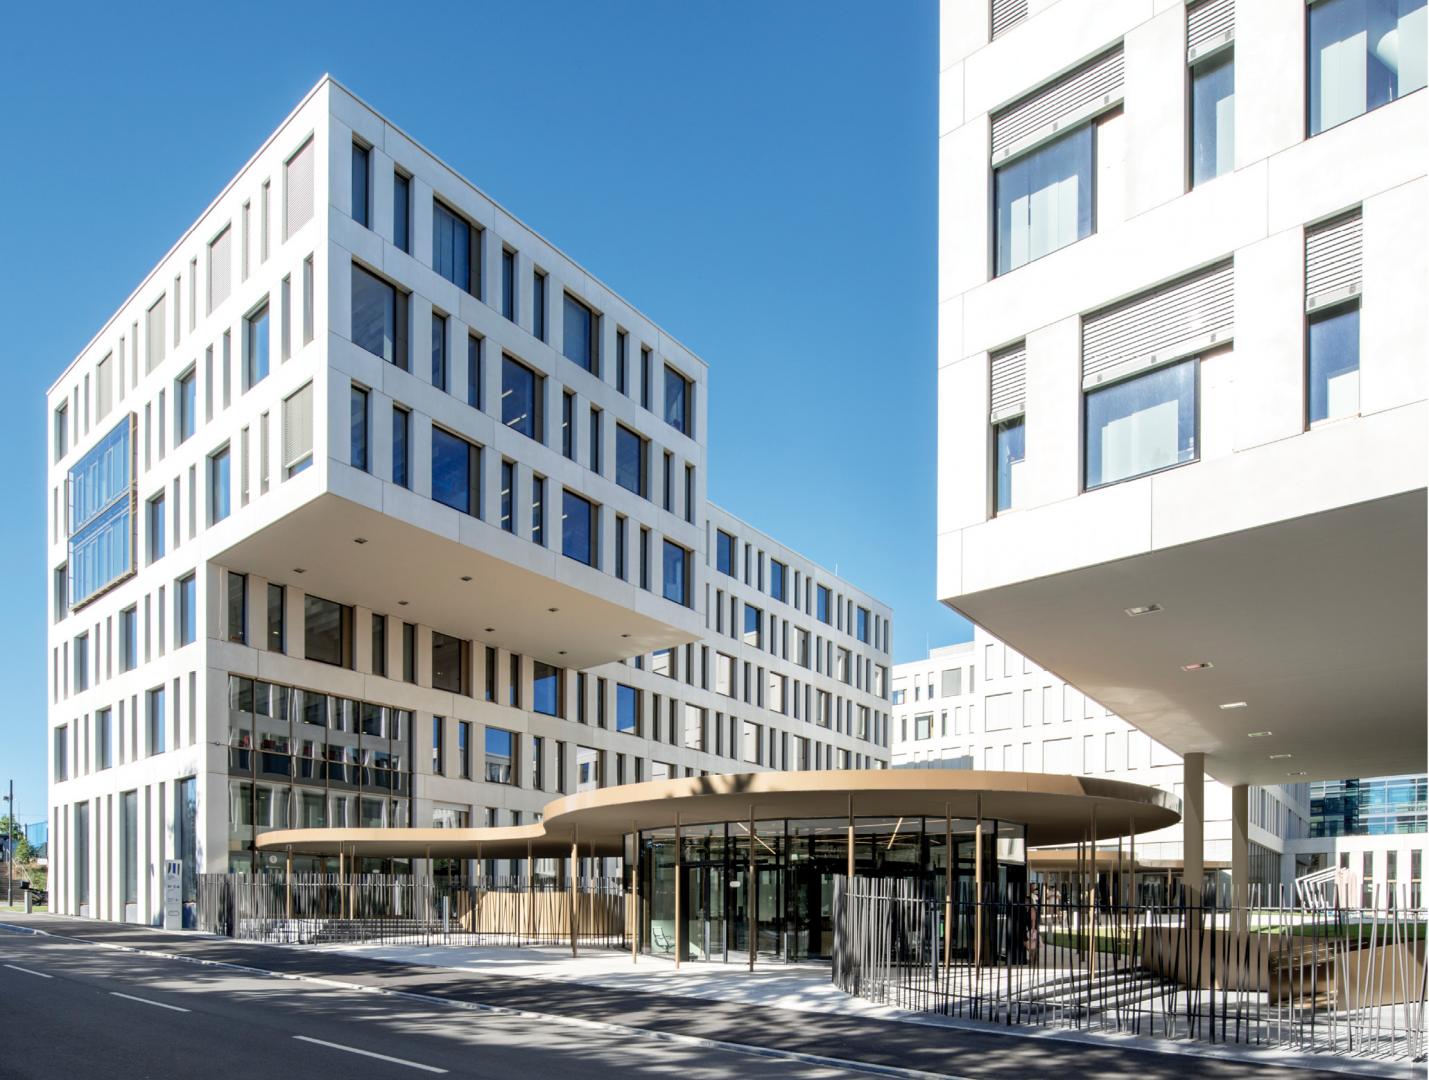 1 Bâtiment administratif au Kirchberg, rue Albert Wehrer - rue Alcide de Gasperi. Phase de conception en association momentanée avec KCAP Architects & Planners et NC & BHAM.